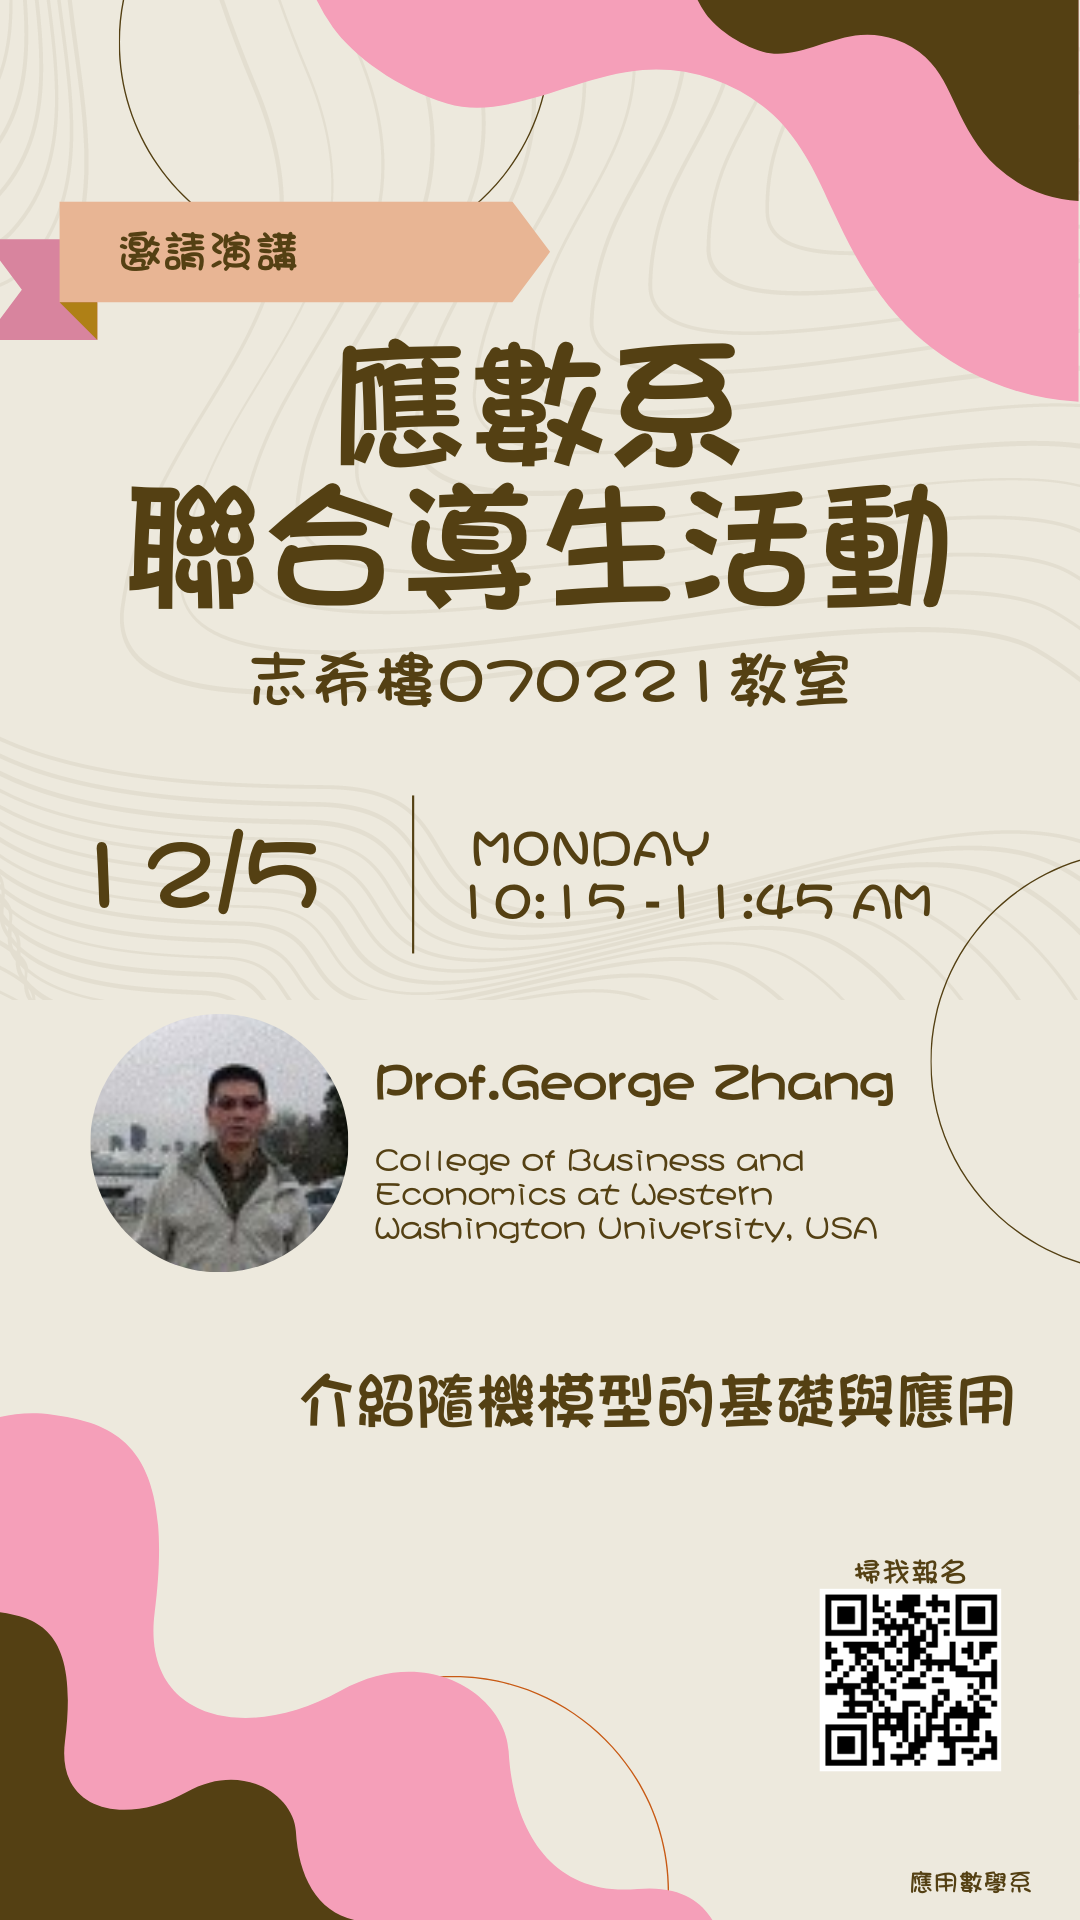 111年12月5日 聯合導師活動-Prof. George Zhang (美國華盛頓大學)